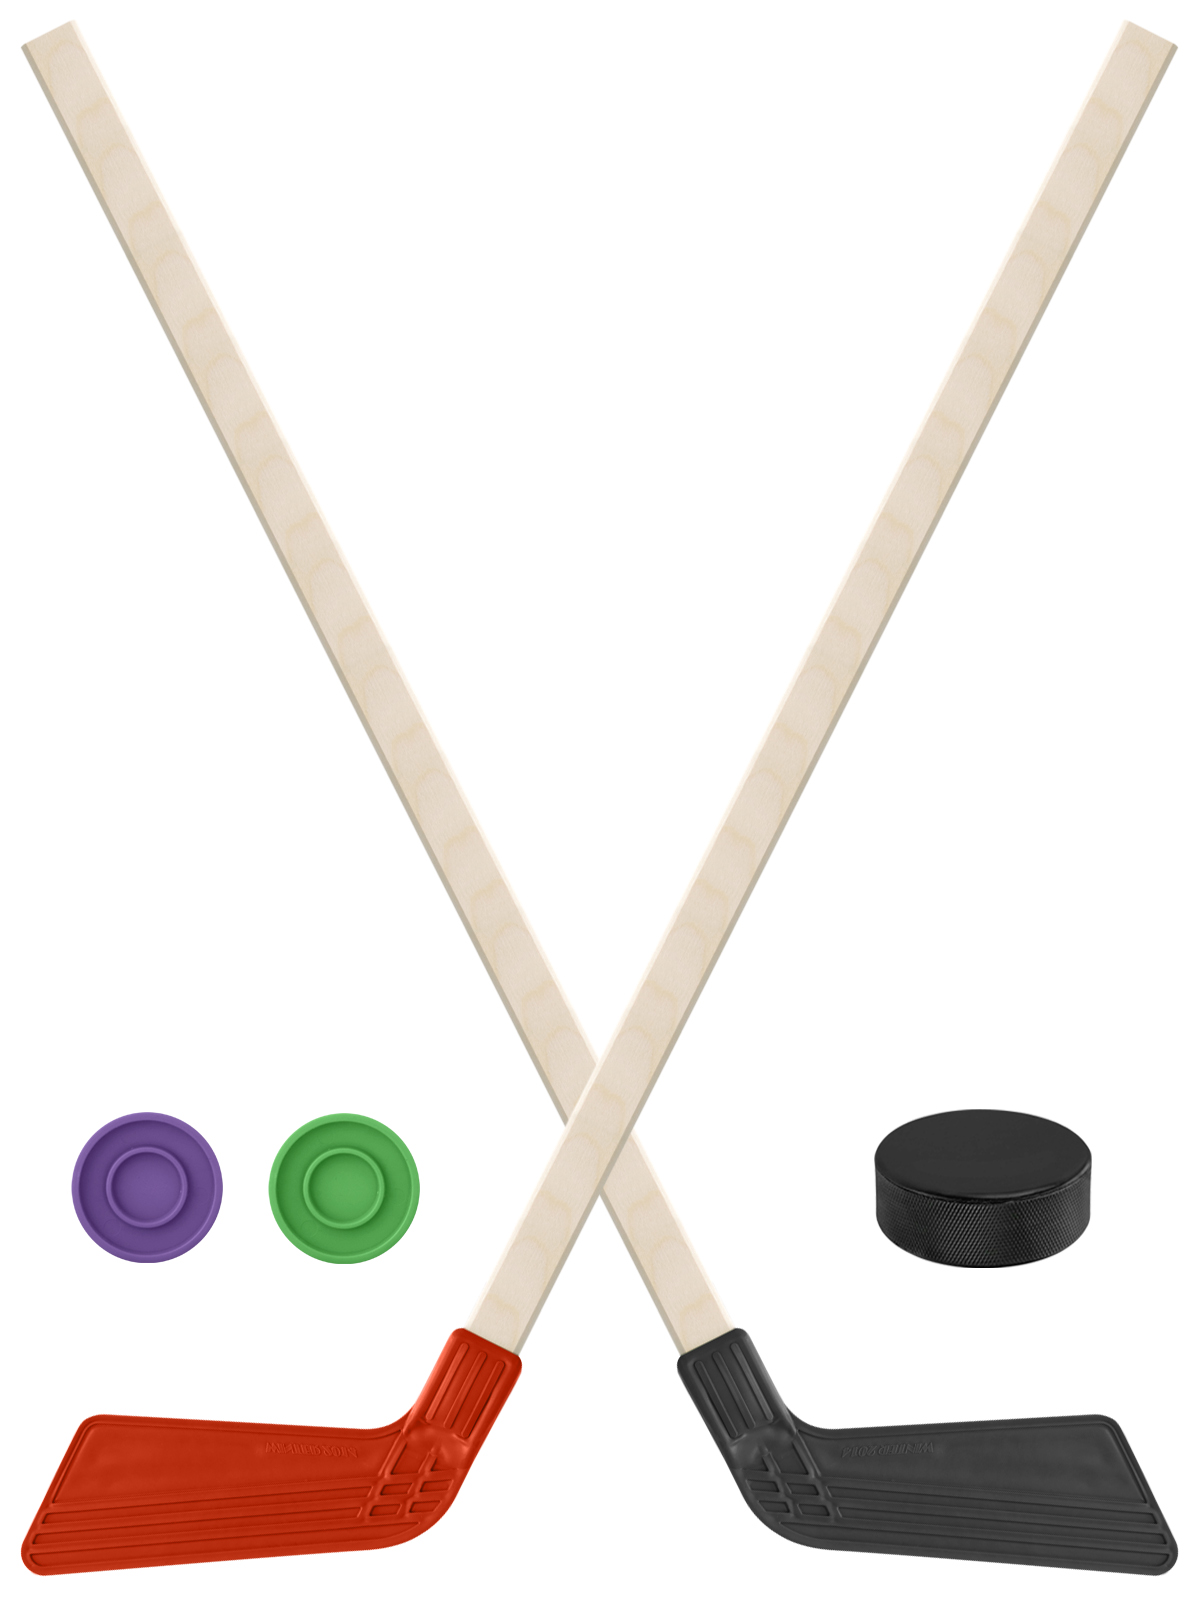 Детский хоккейный набор Задира-плюс  Клюшка хоккейная 2шт(красн,чёрн)+2 шайбы+Шайба 75 мм нордпласт набор хоккейный клуб 2 клюшки 2 шайбы 1020 1